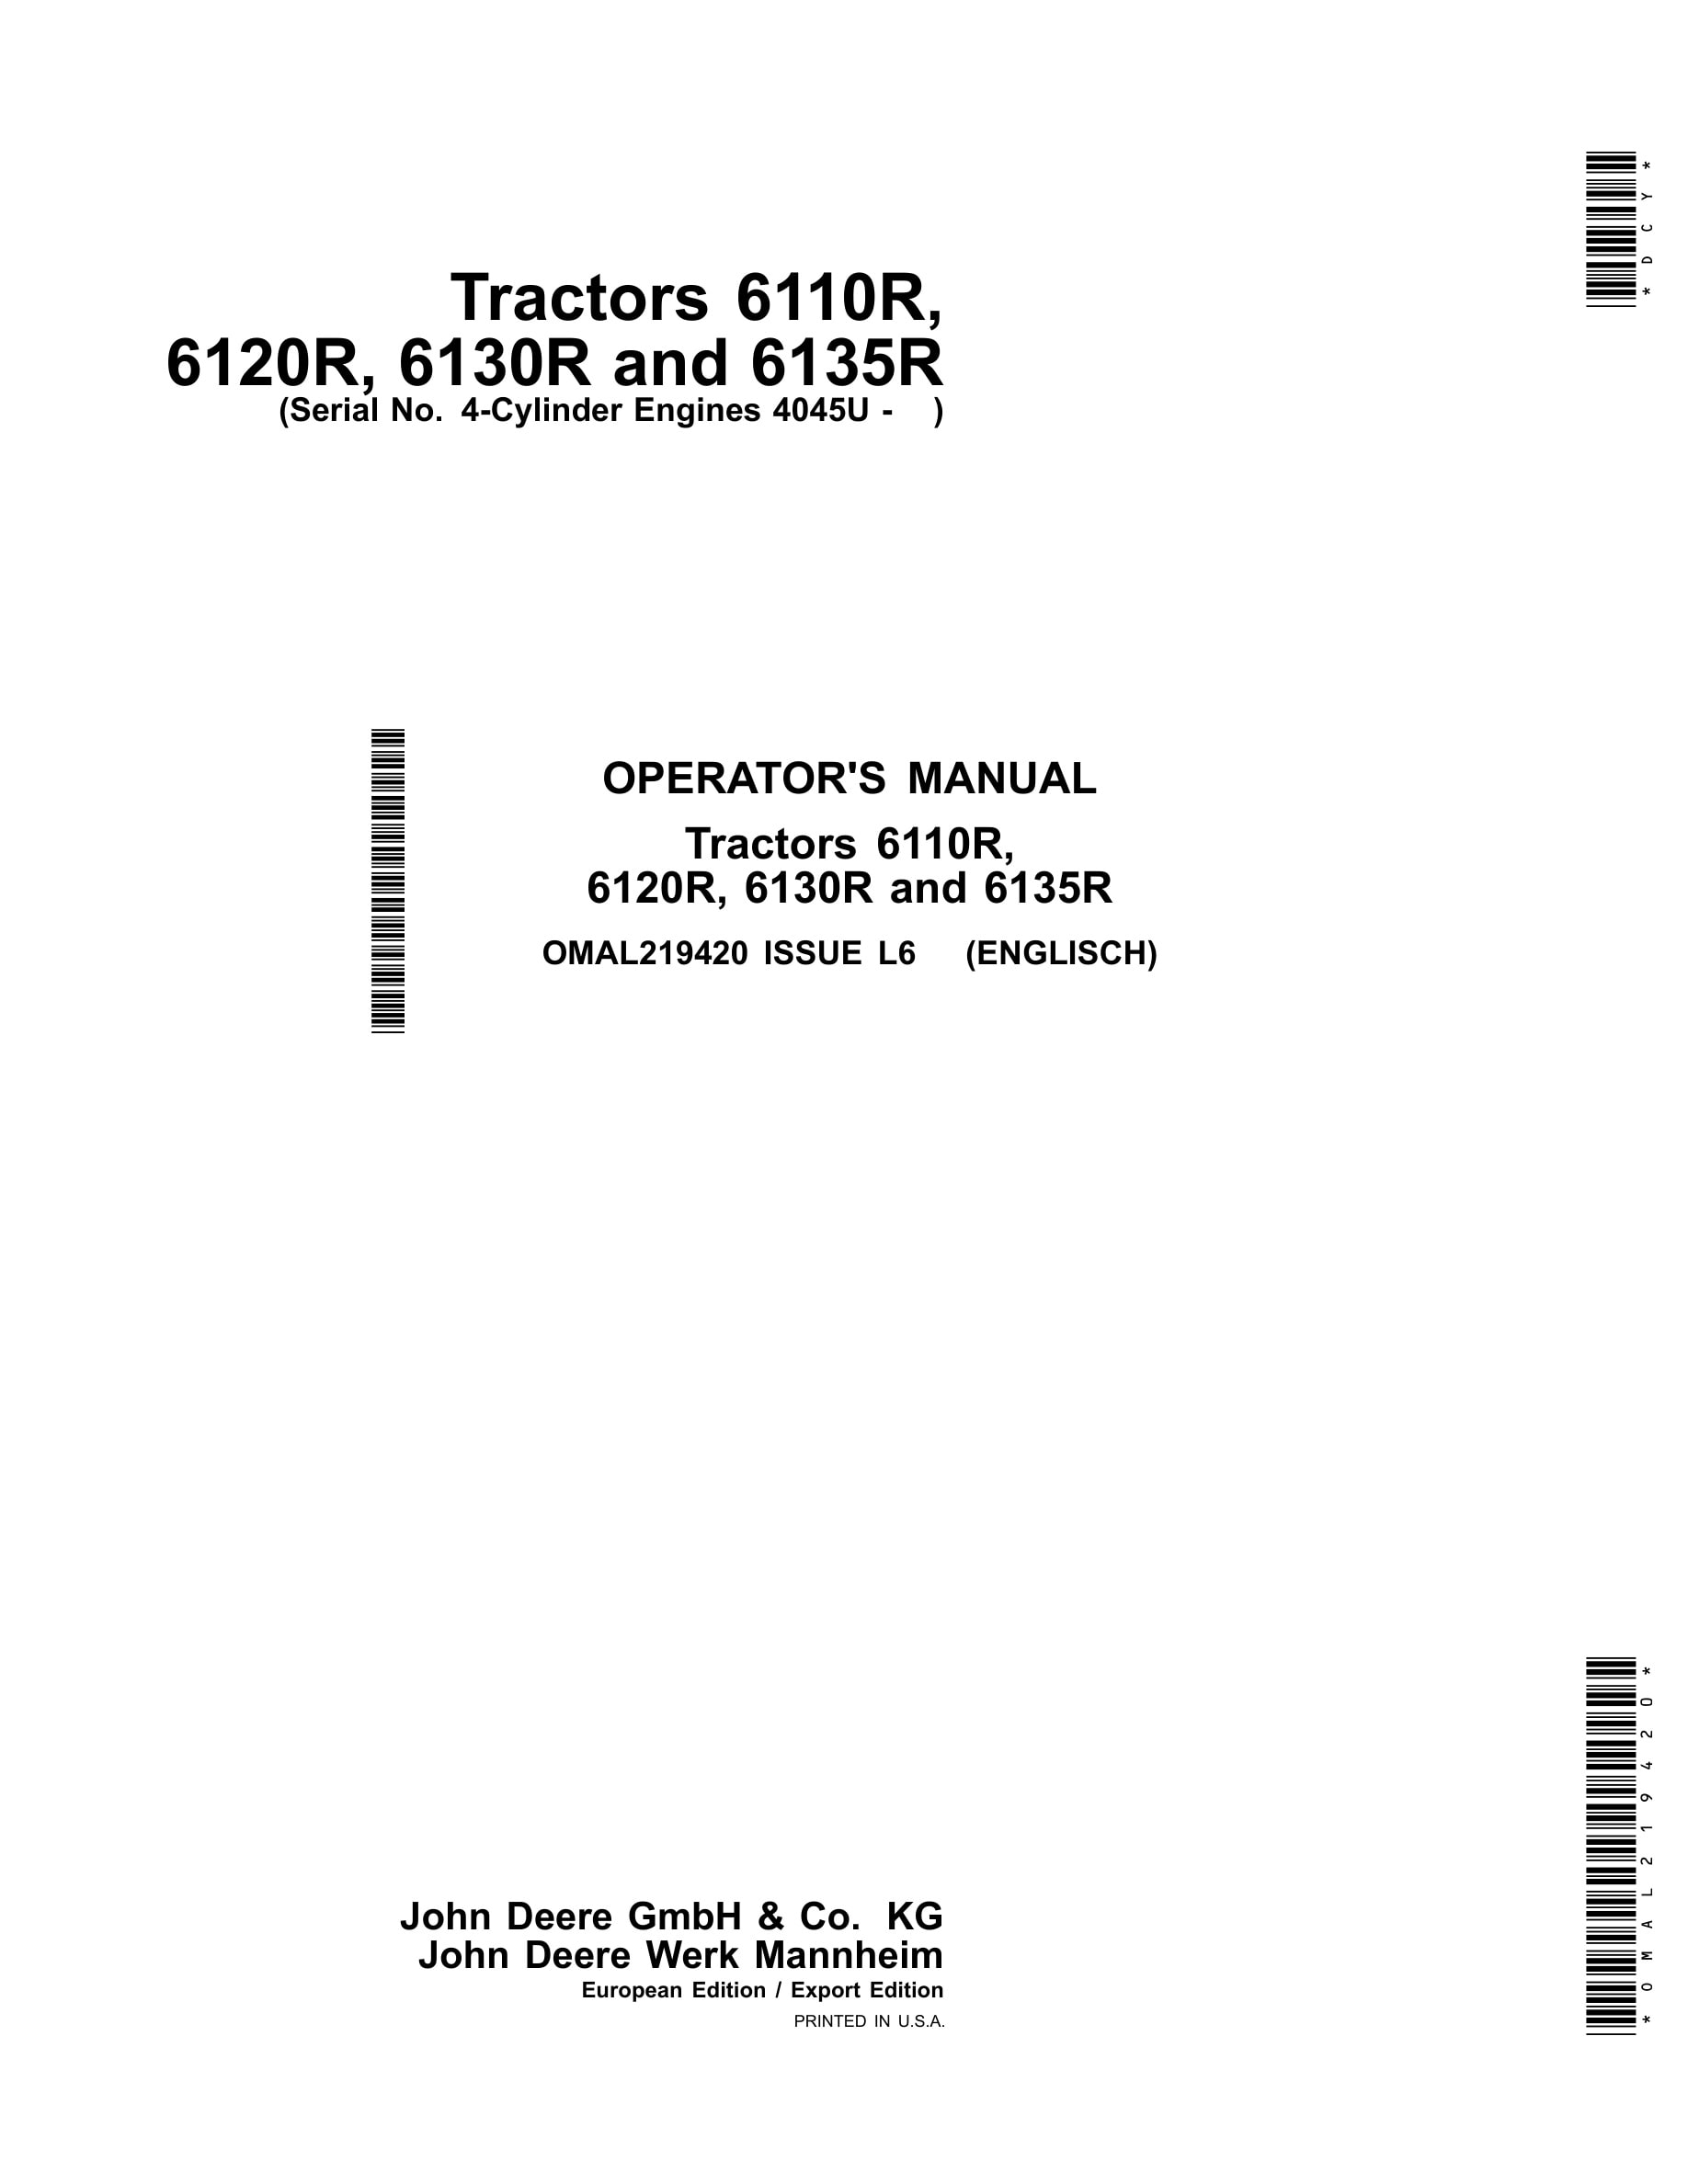 John Deere 6110r 6120r, 6130r And 6135r Tractors Operator Manuals OMAL219420-1